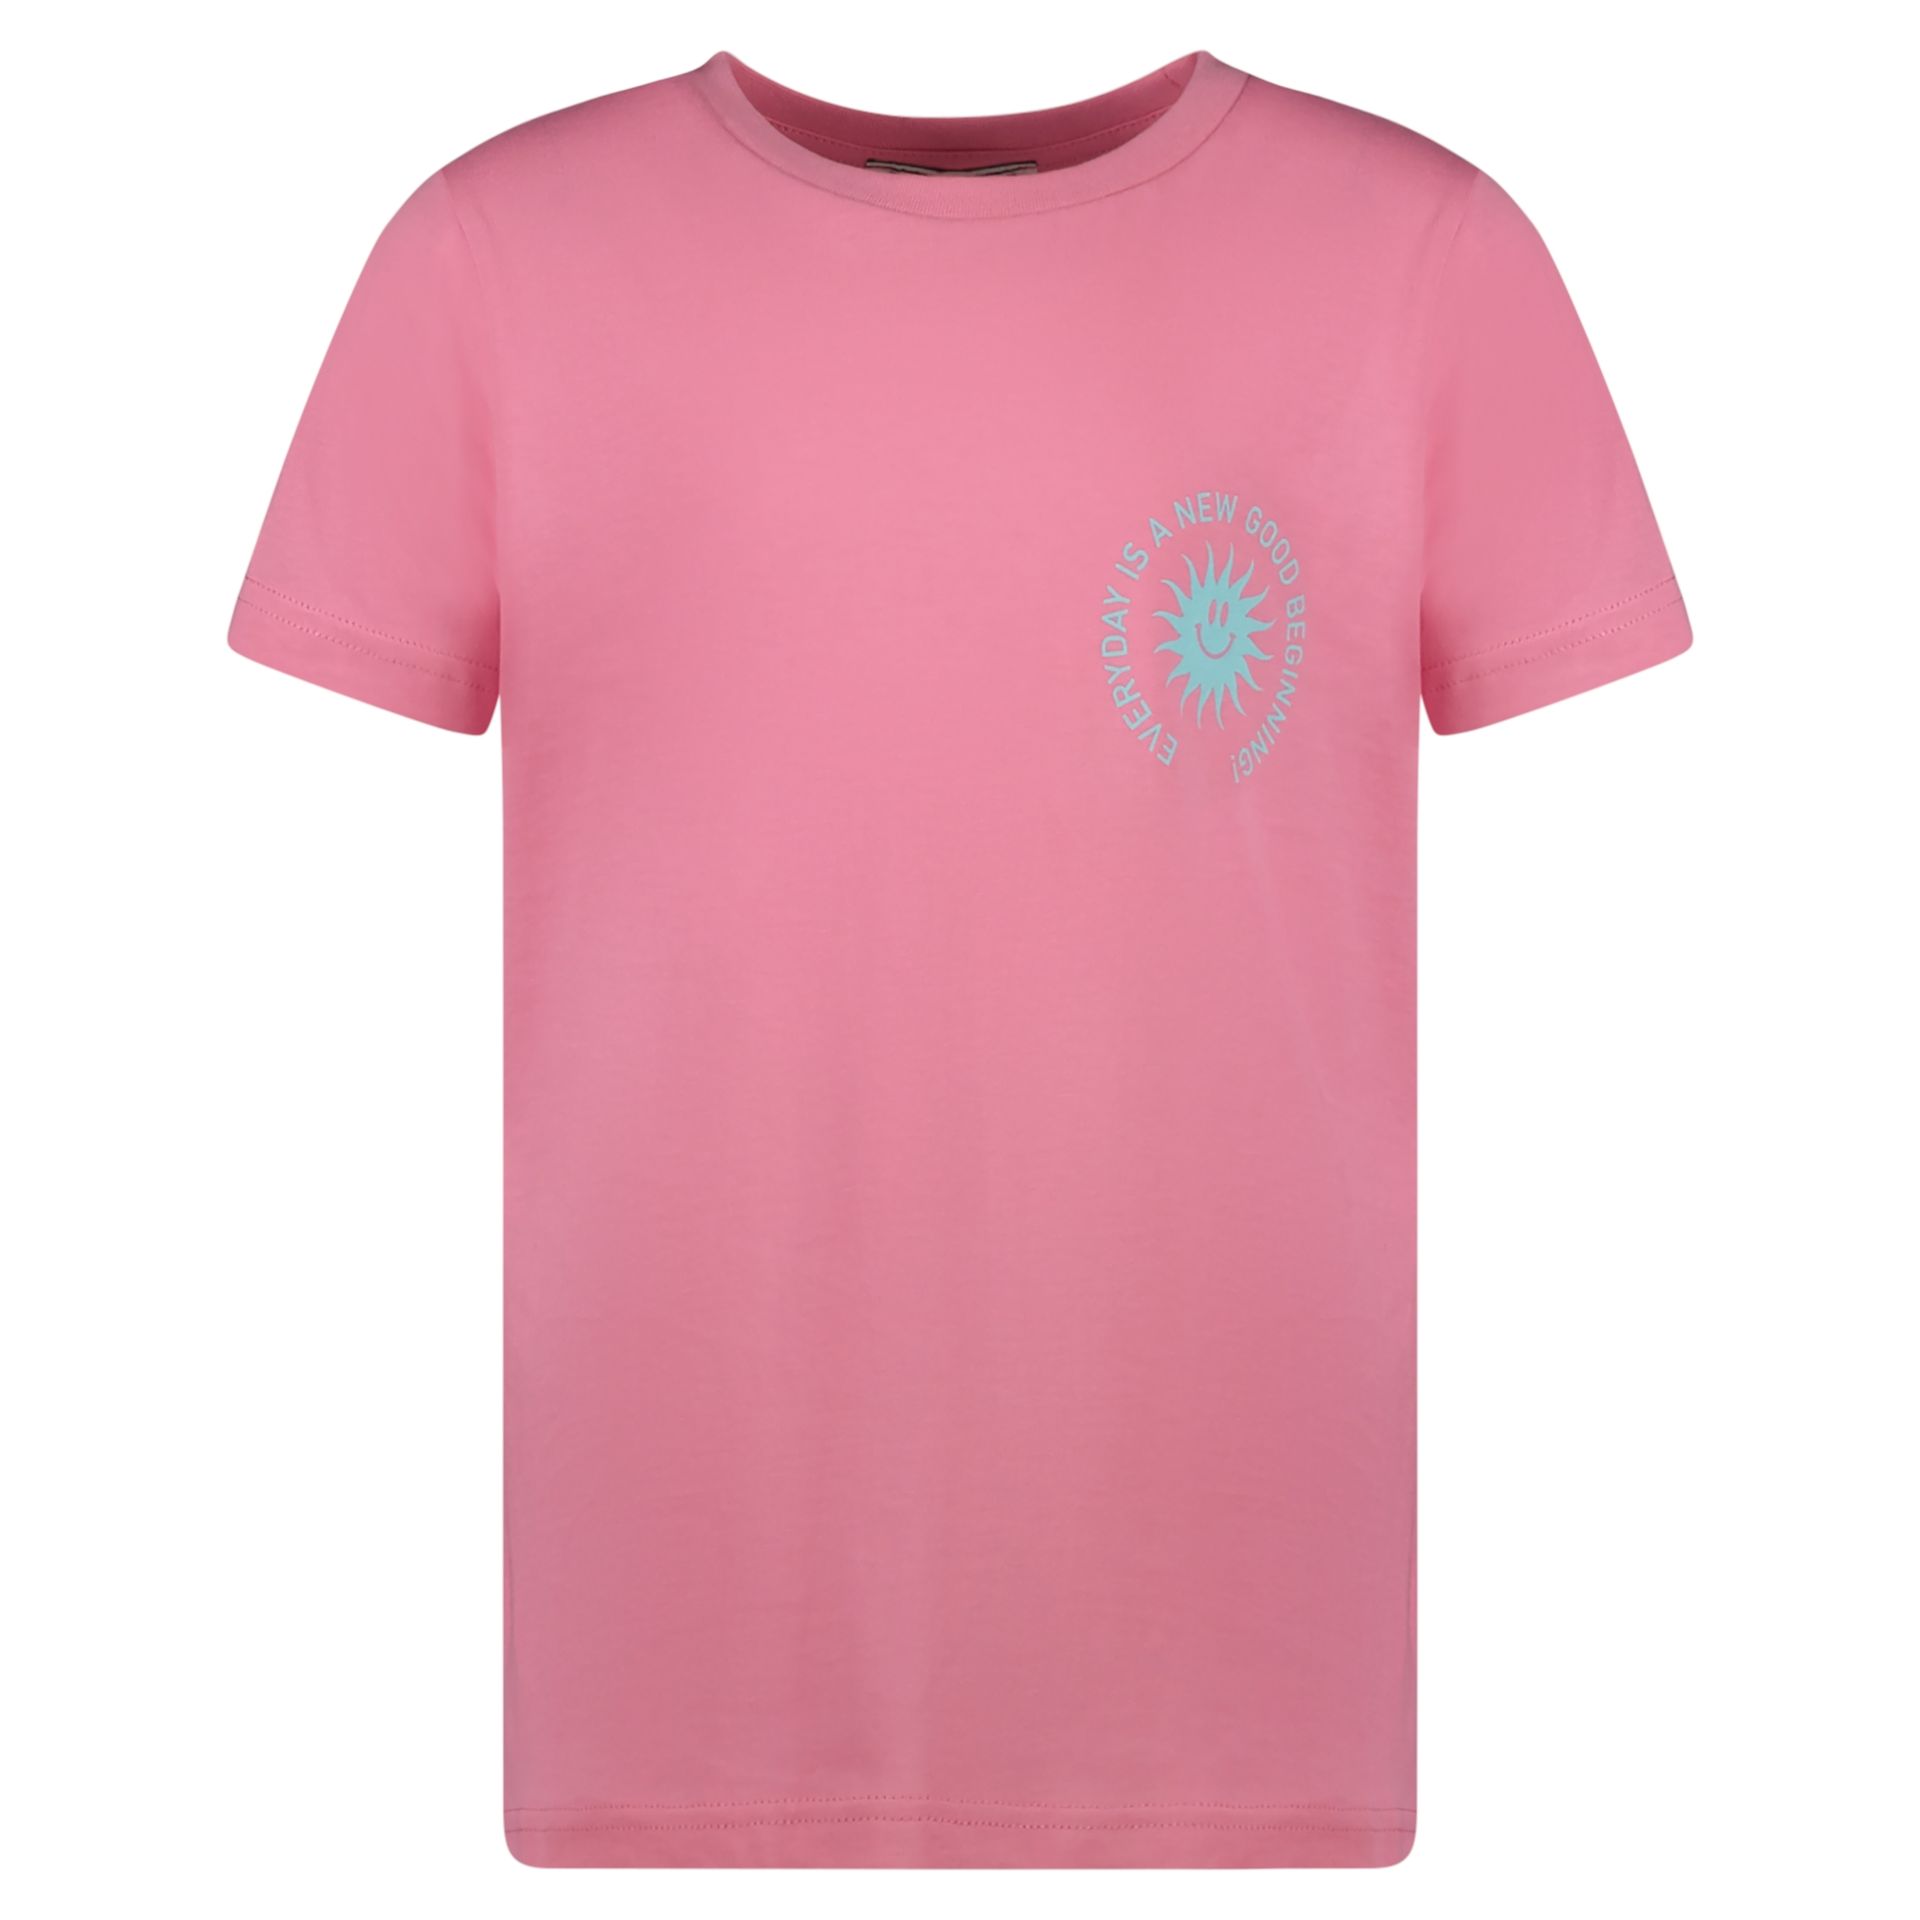 Cars Meisjes T-shirt Kyi Jr. 68 soft pink 00108824-EKA03000200000045